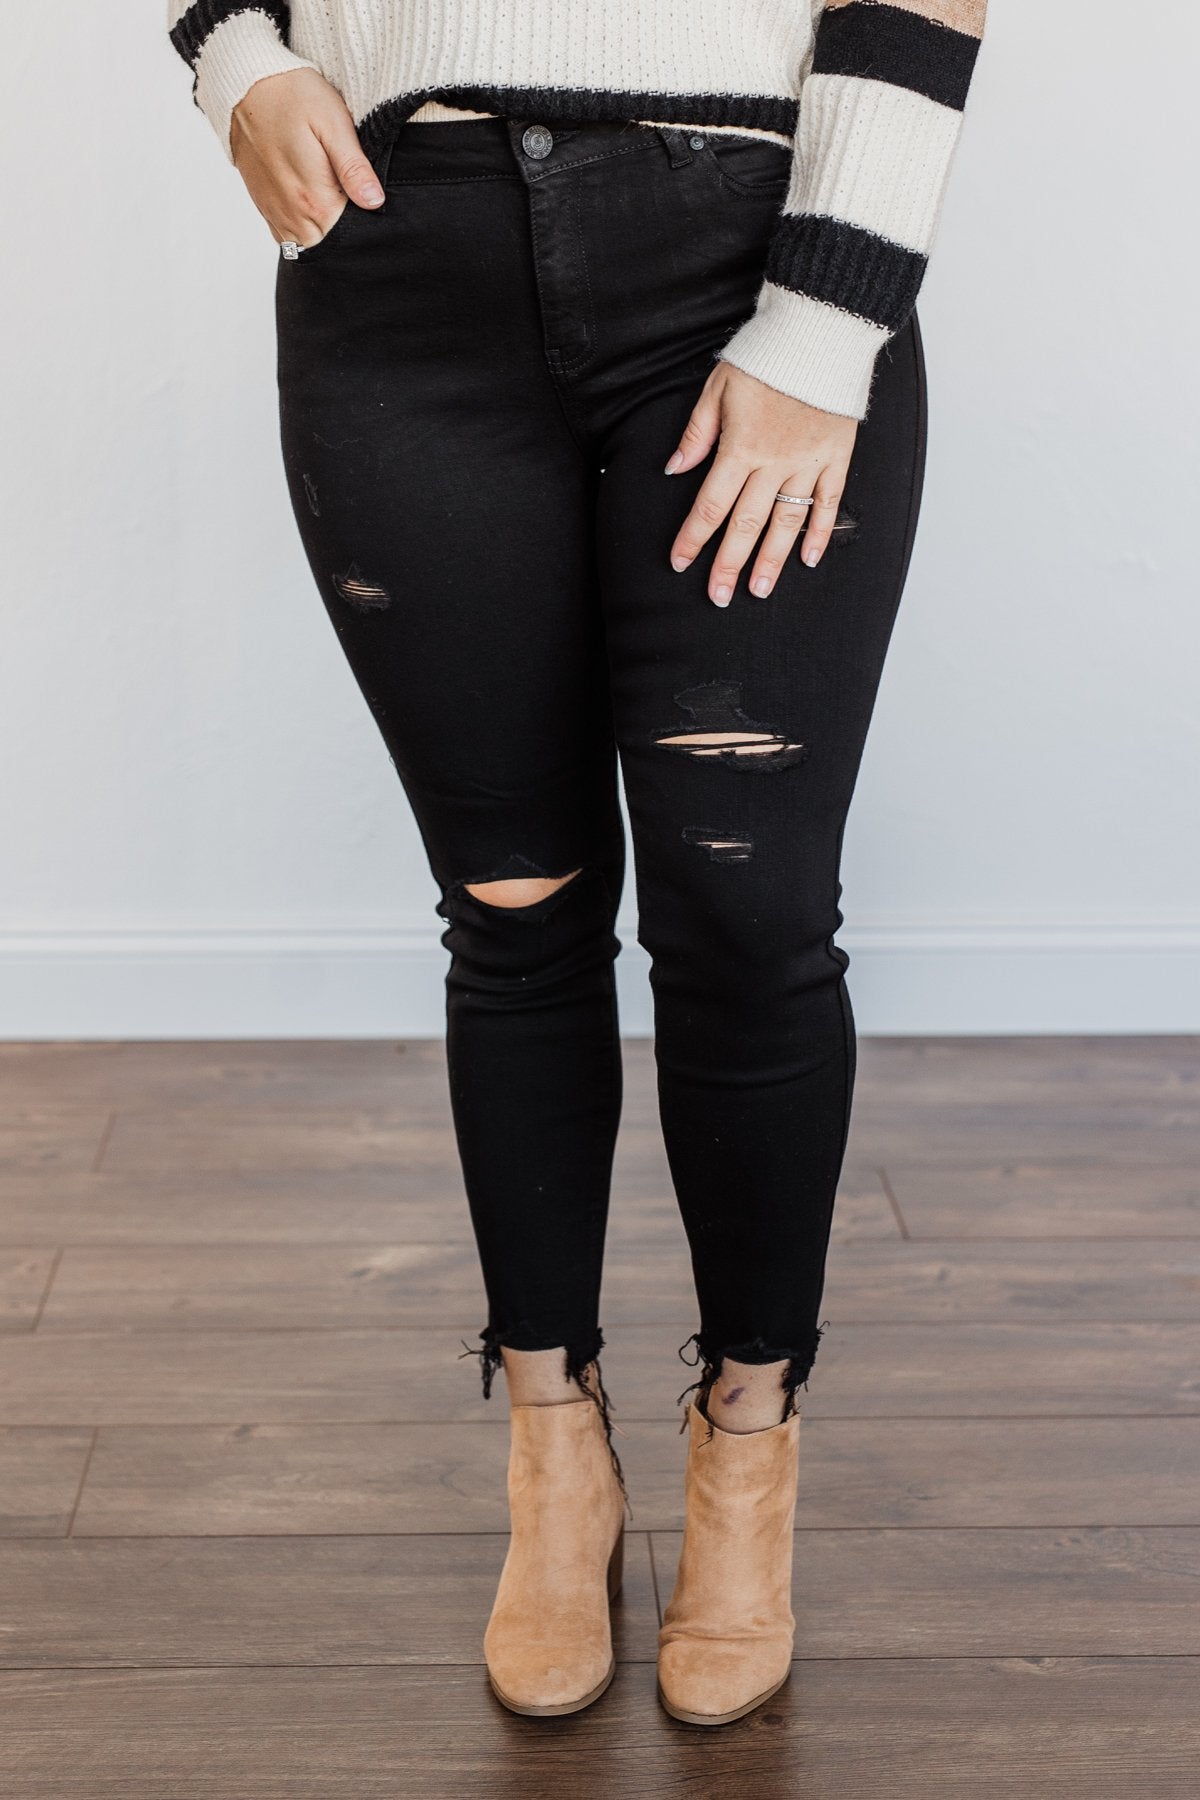 EnJean Ankle Crop Skinny Jeans- Black Giselle Wash